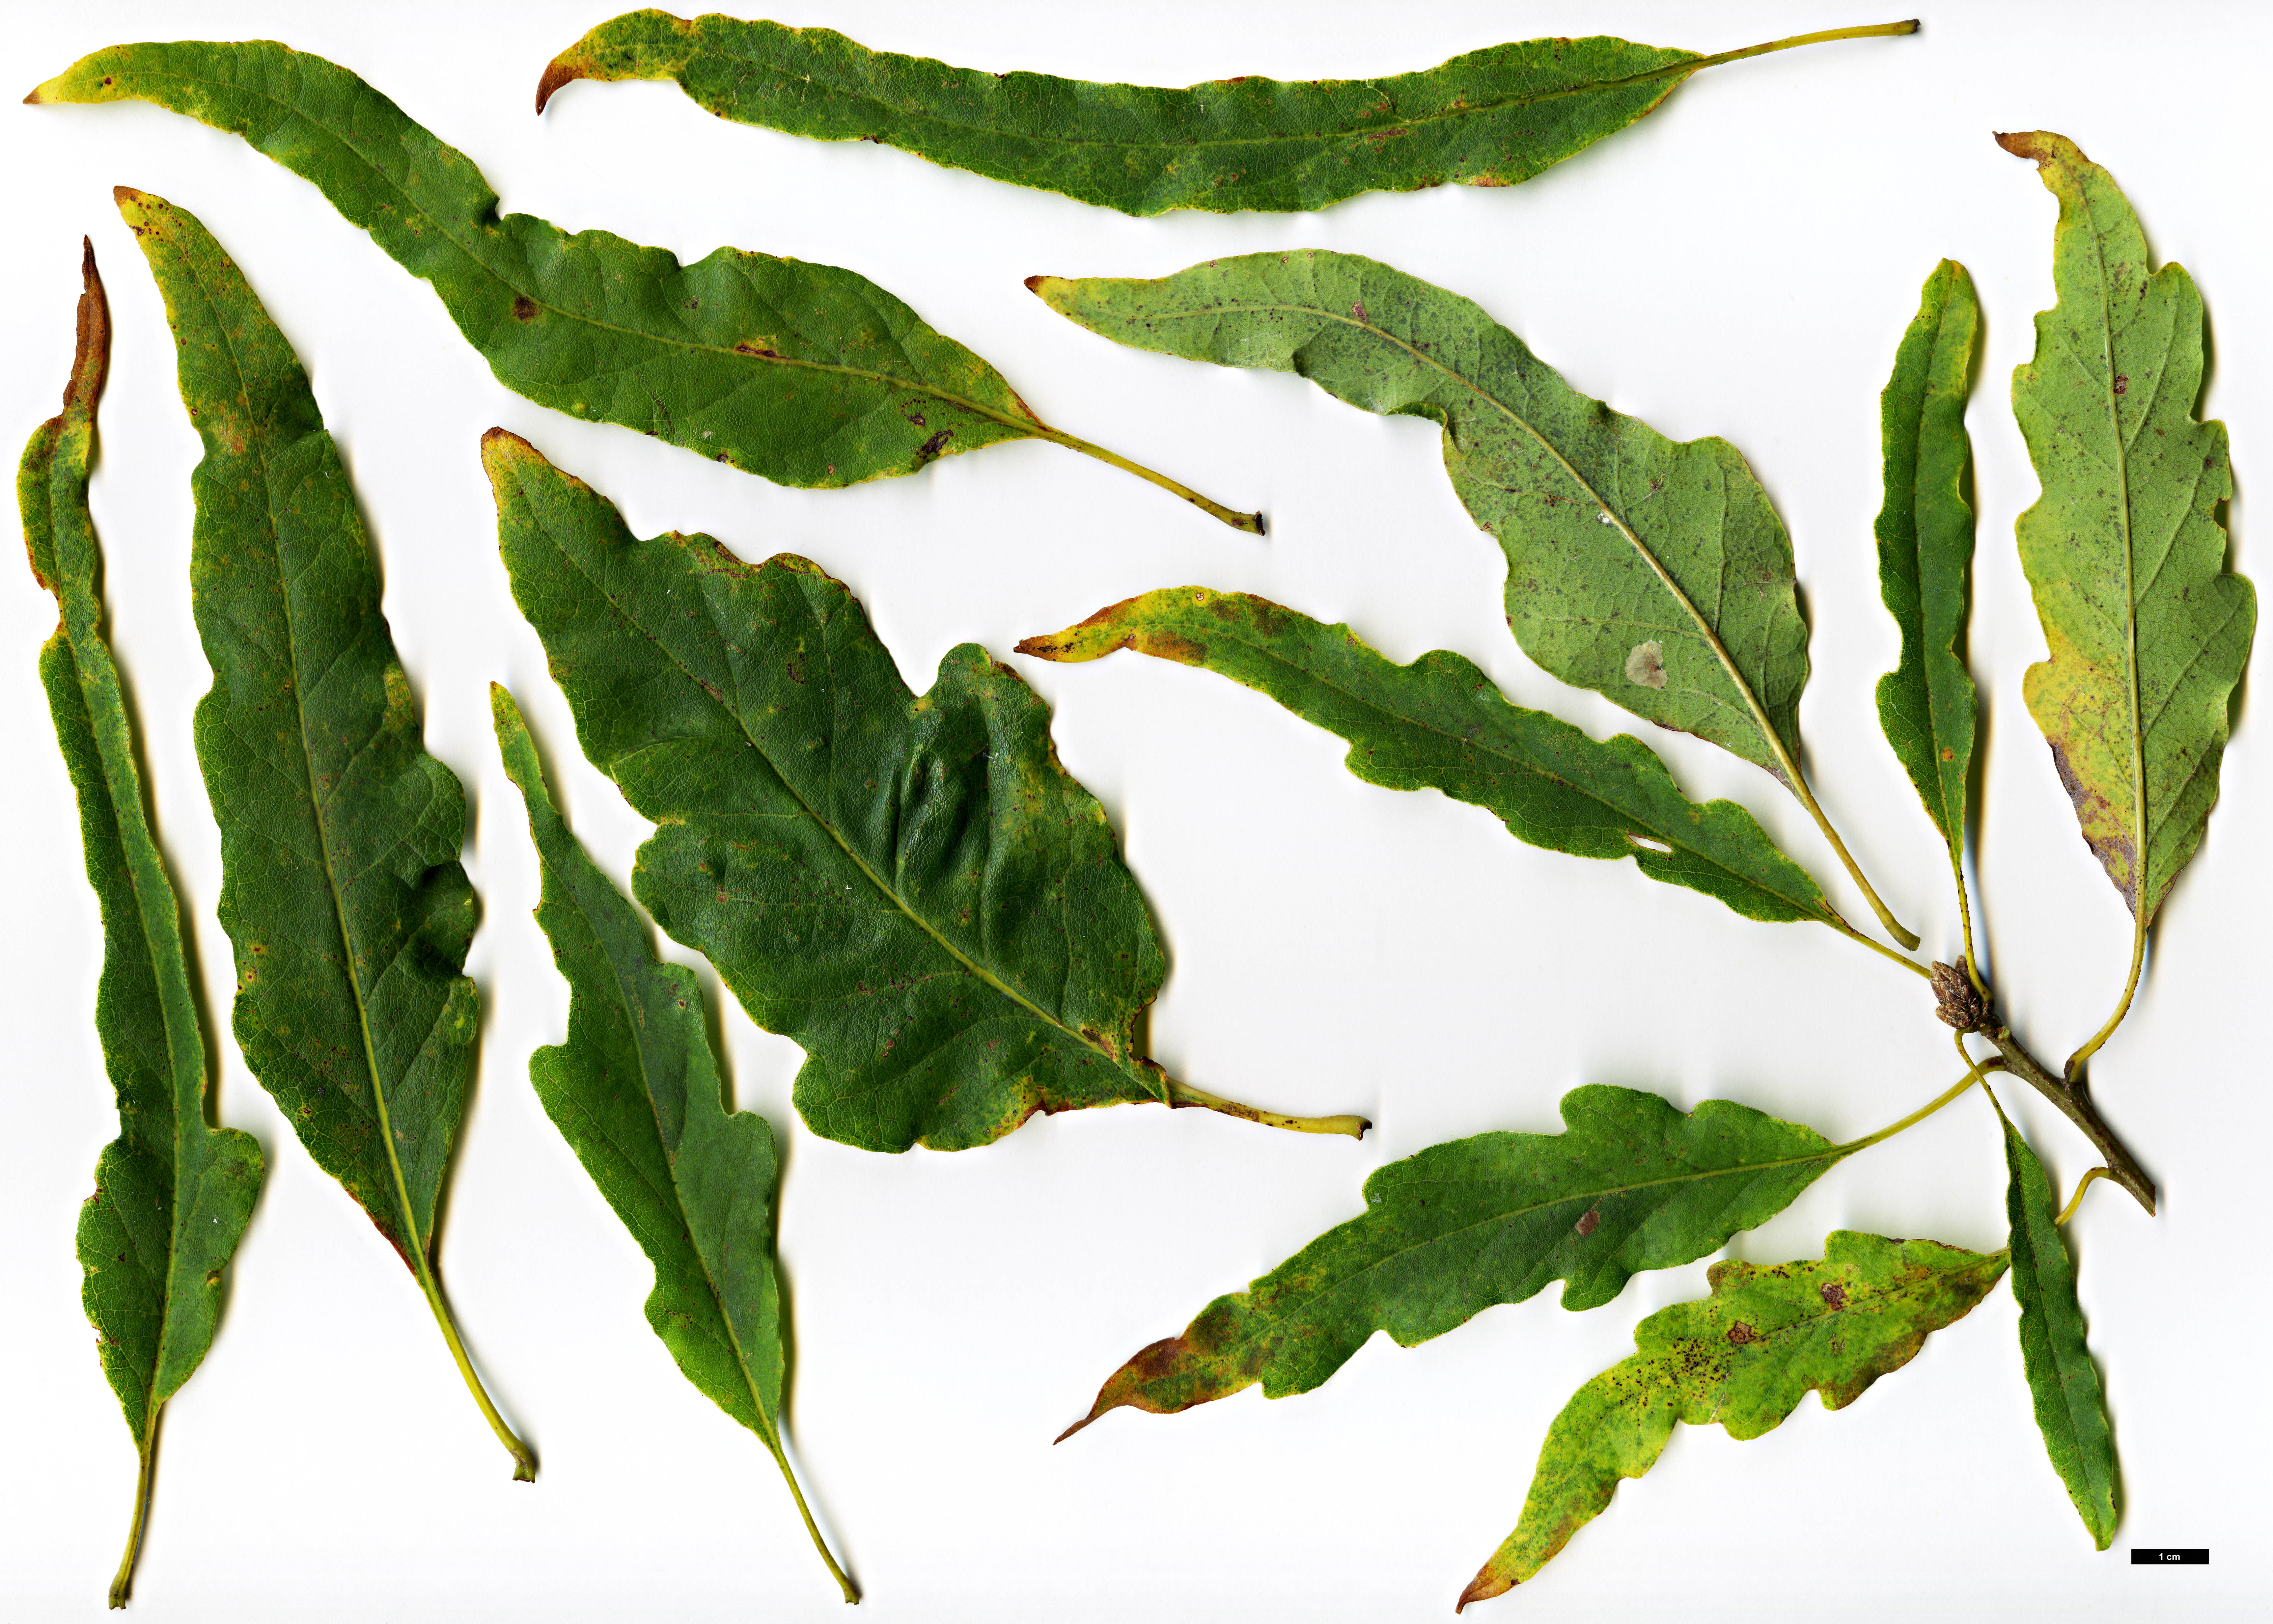 High resolution image: Family: Fagaceae - Genus: Quercus - Taxon: petraea - SpeciesSub: Sublobata Group